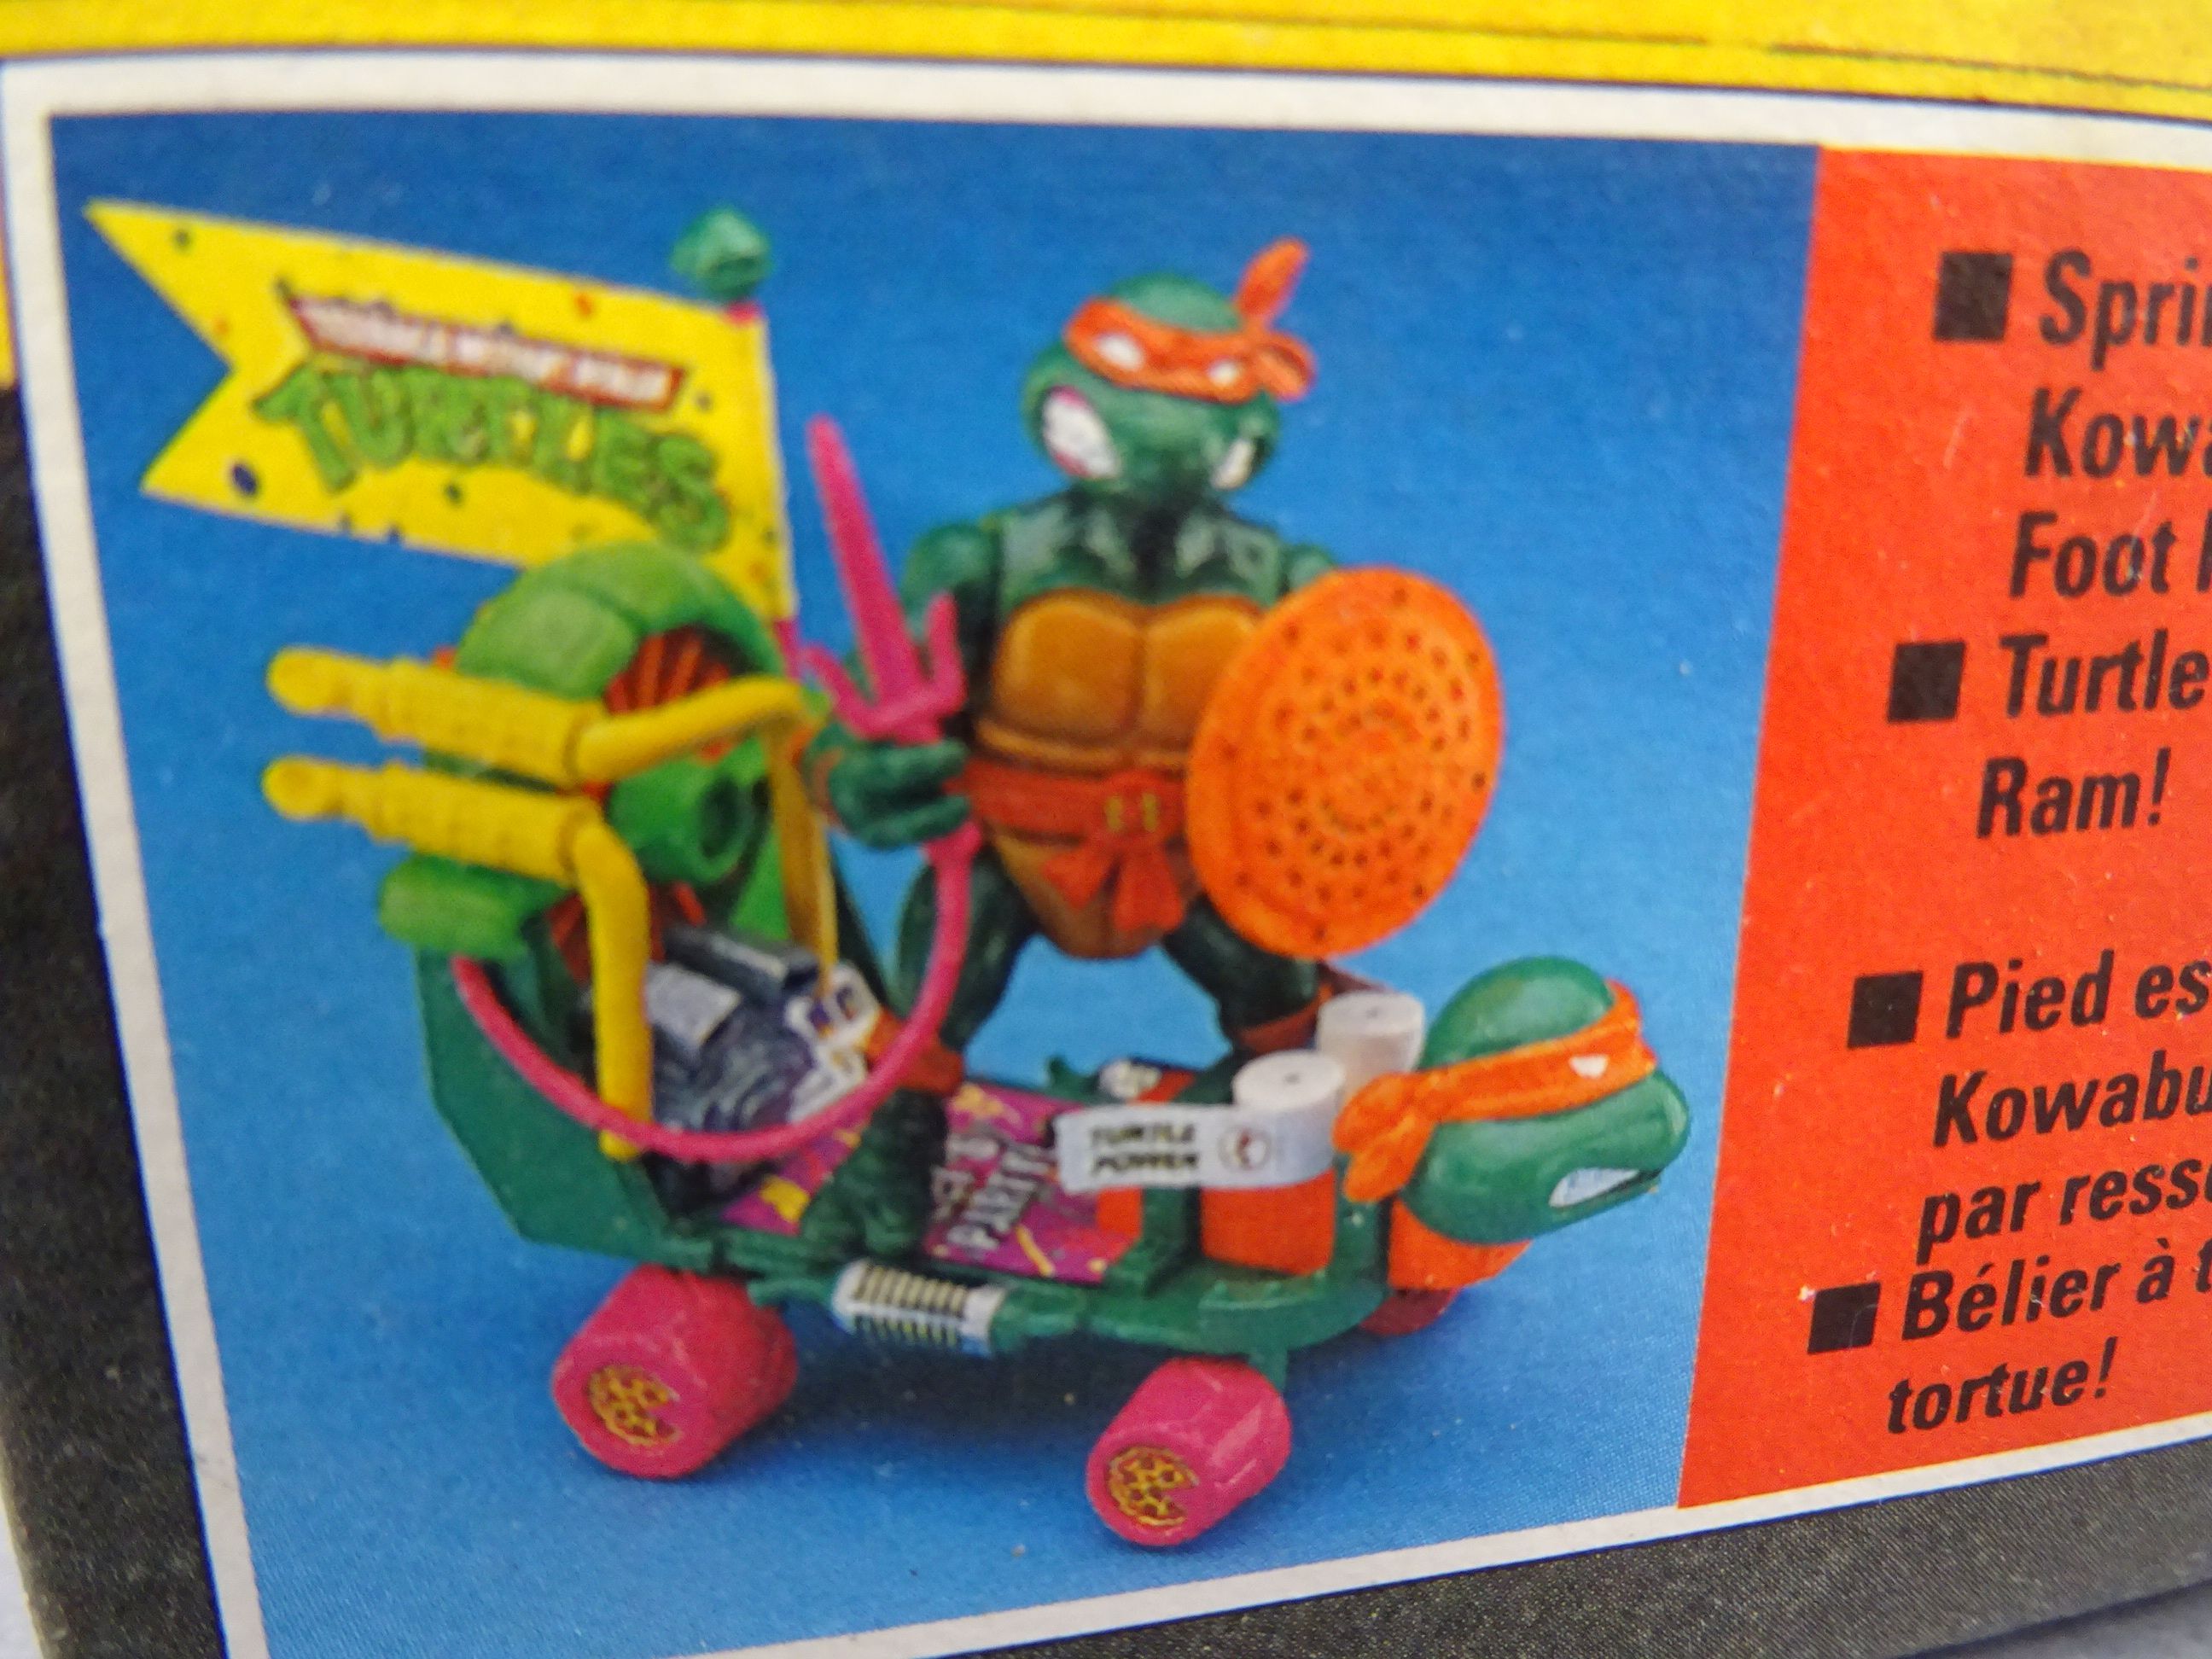 Original boxed Playmates Teenage Mutant Ninja Turtles Cheapskate II vehicle, opened but unplayed - Image 2 of 3